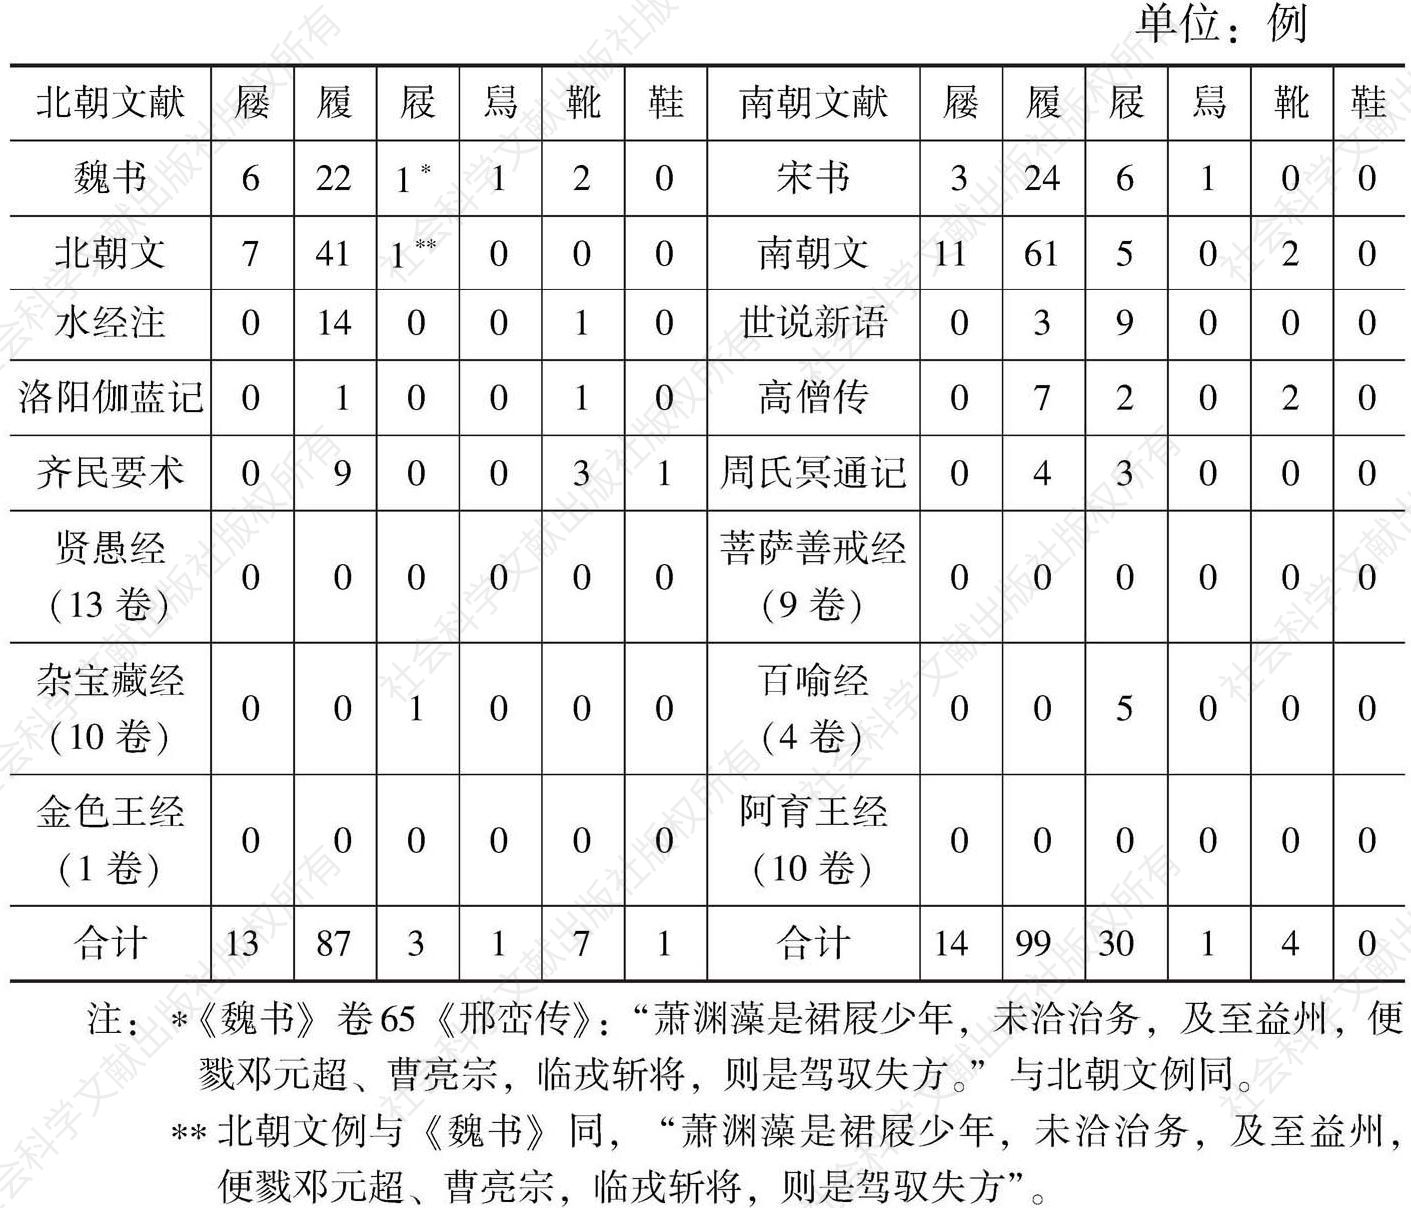 表5 南北朝文献中关于“屦”“履”“鞋”等的使用统计